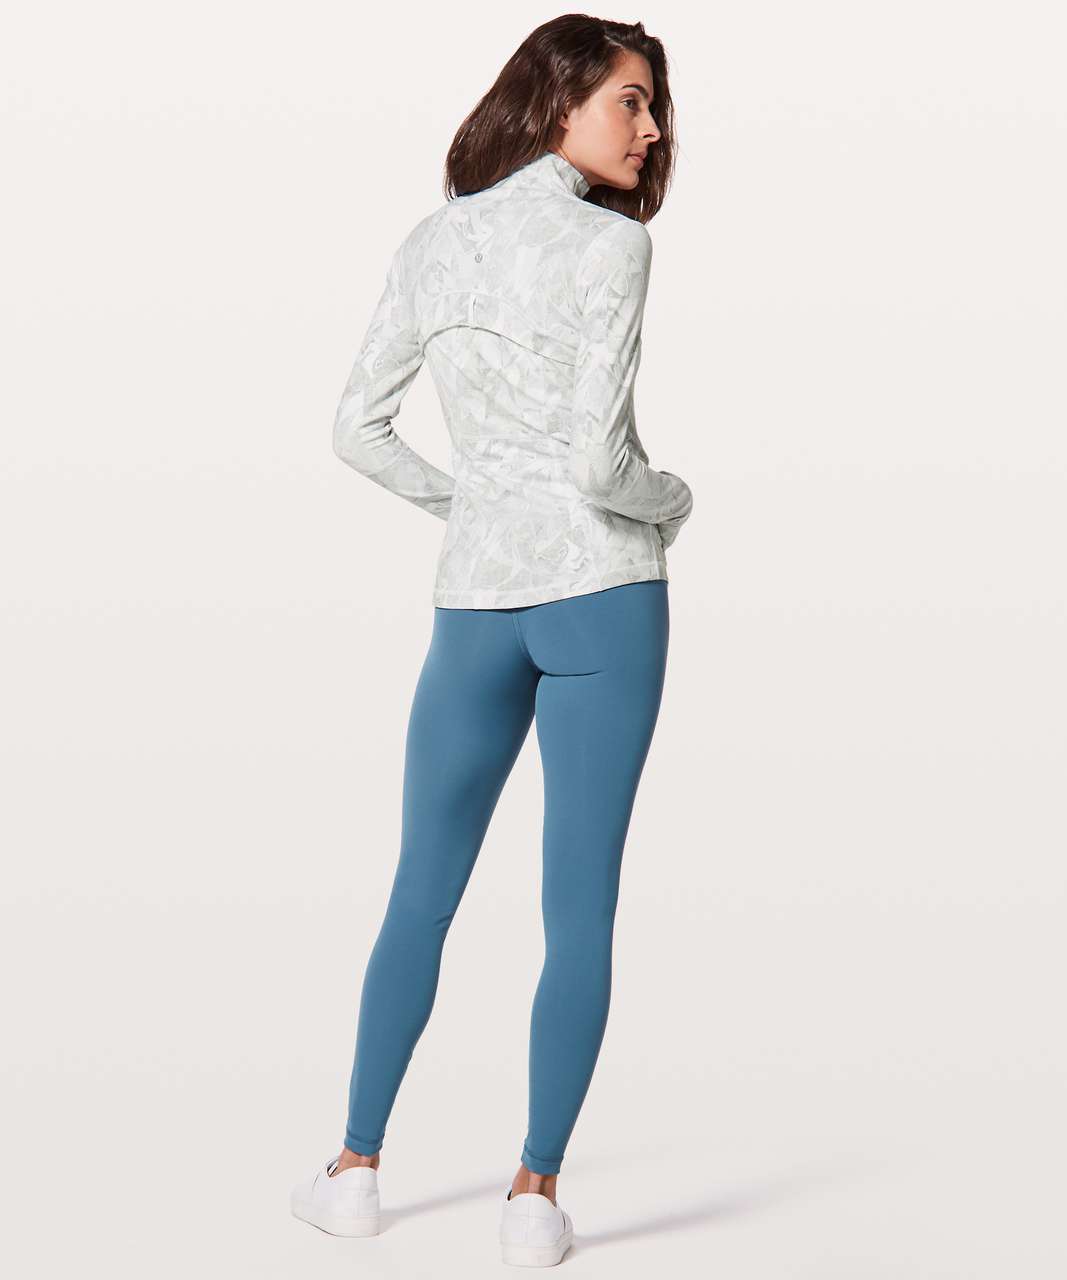 Lululemon Yoga Define Jackets White $78  Lululemon running jacket, Workout  clothes, Yoga pants lululemon